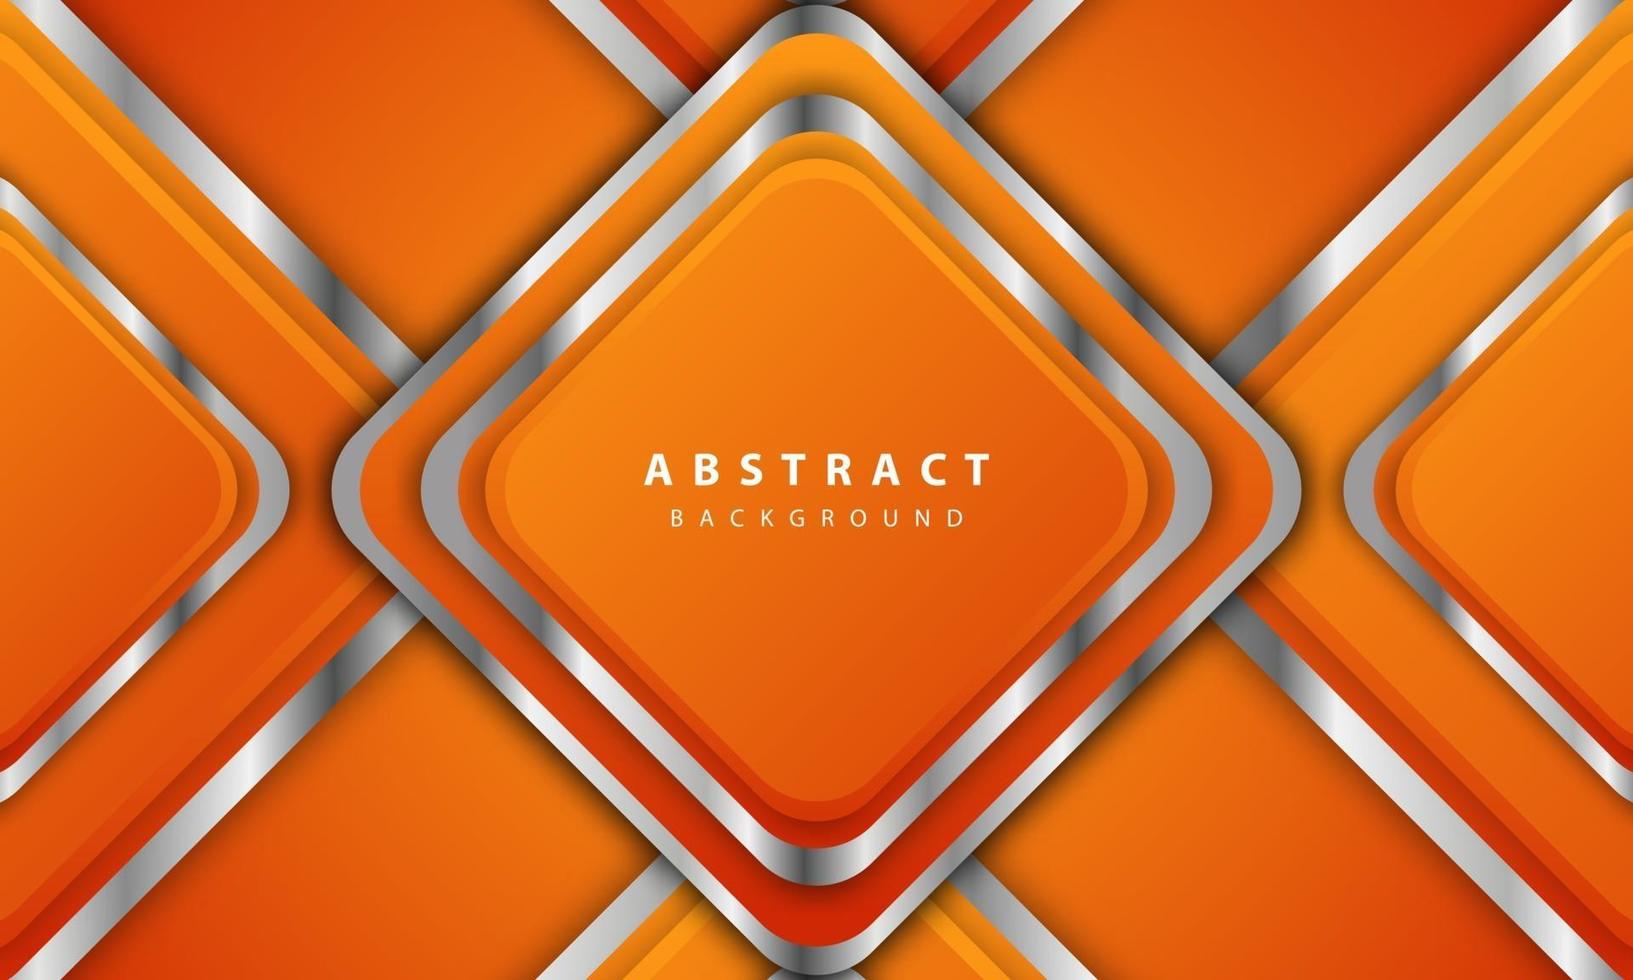 abstracte oranje achtergrond vector